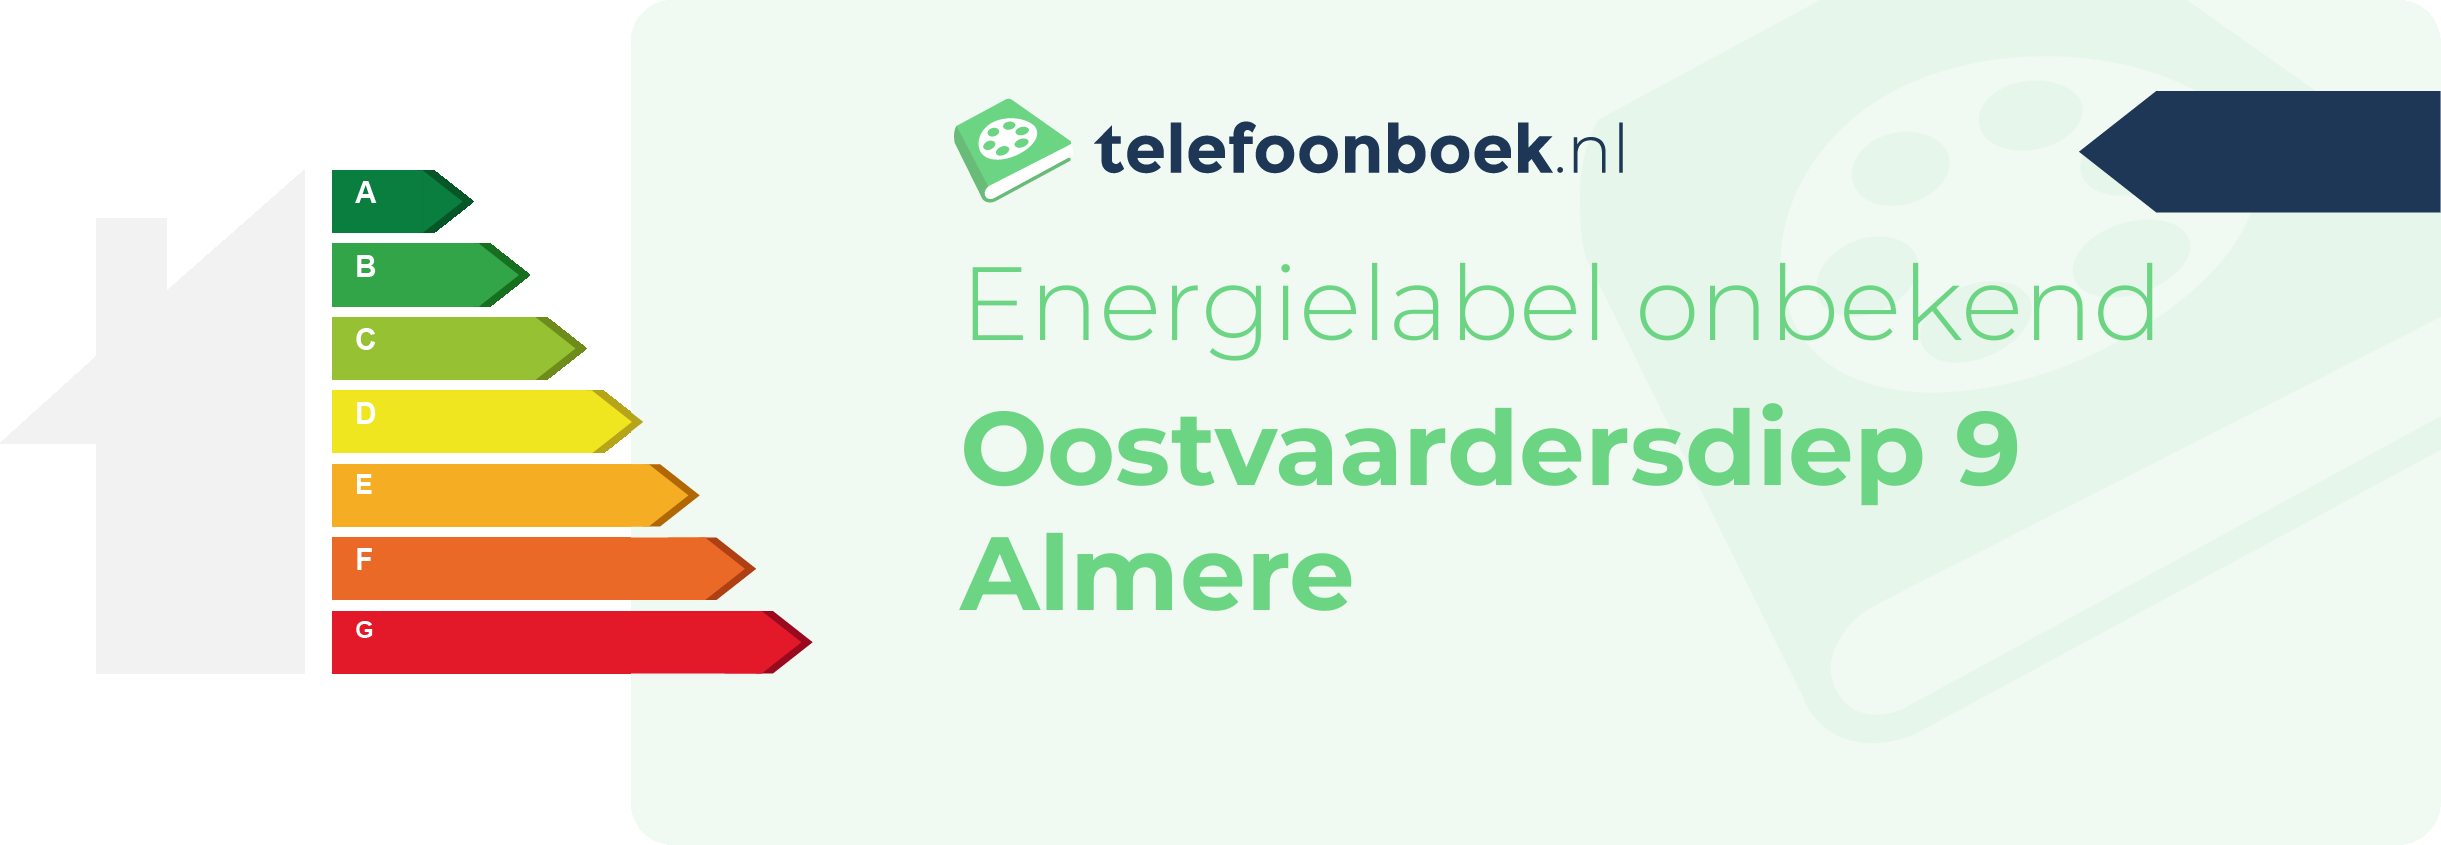 Energielabel Oostvaardersdiep 9 Almere